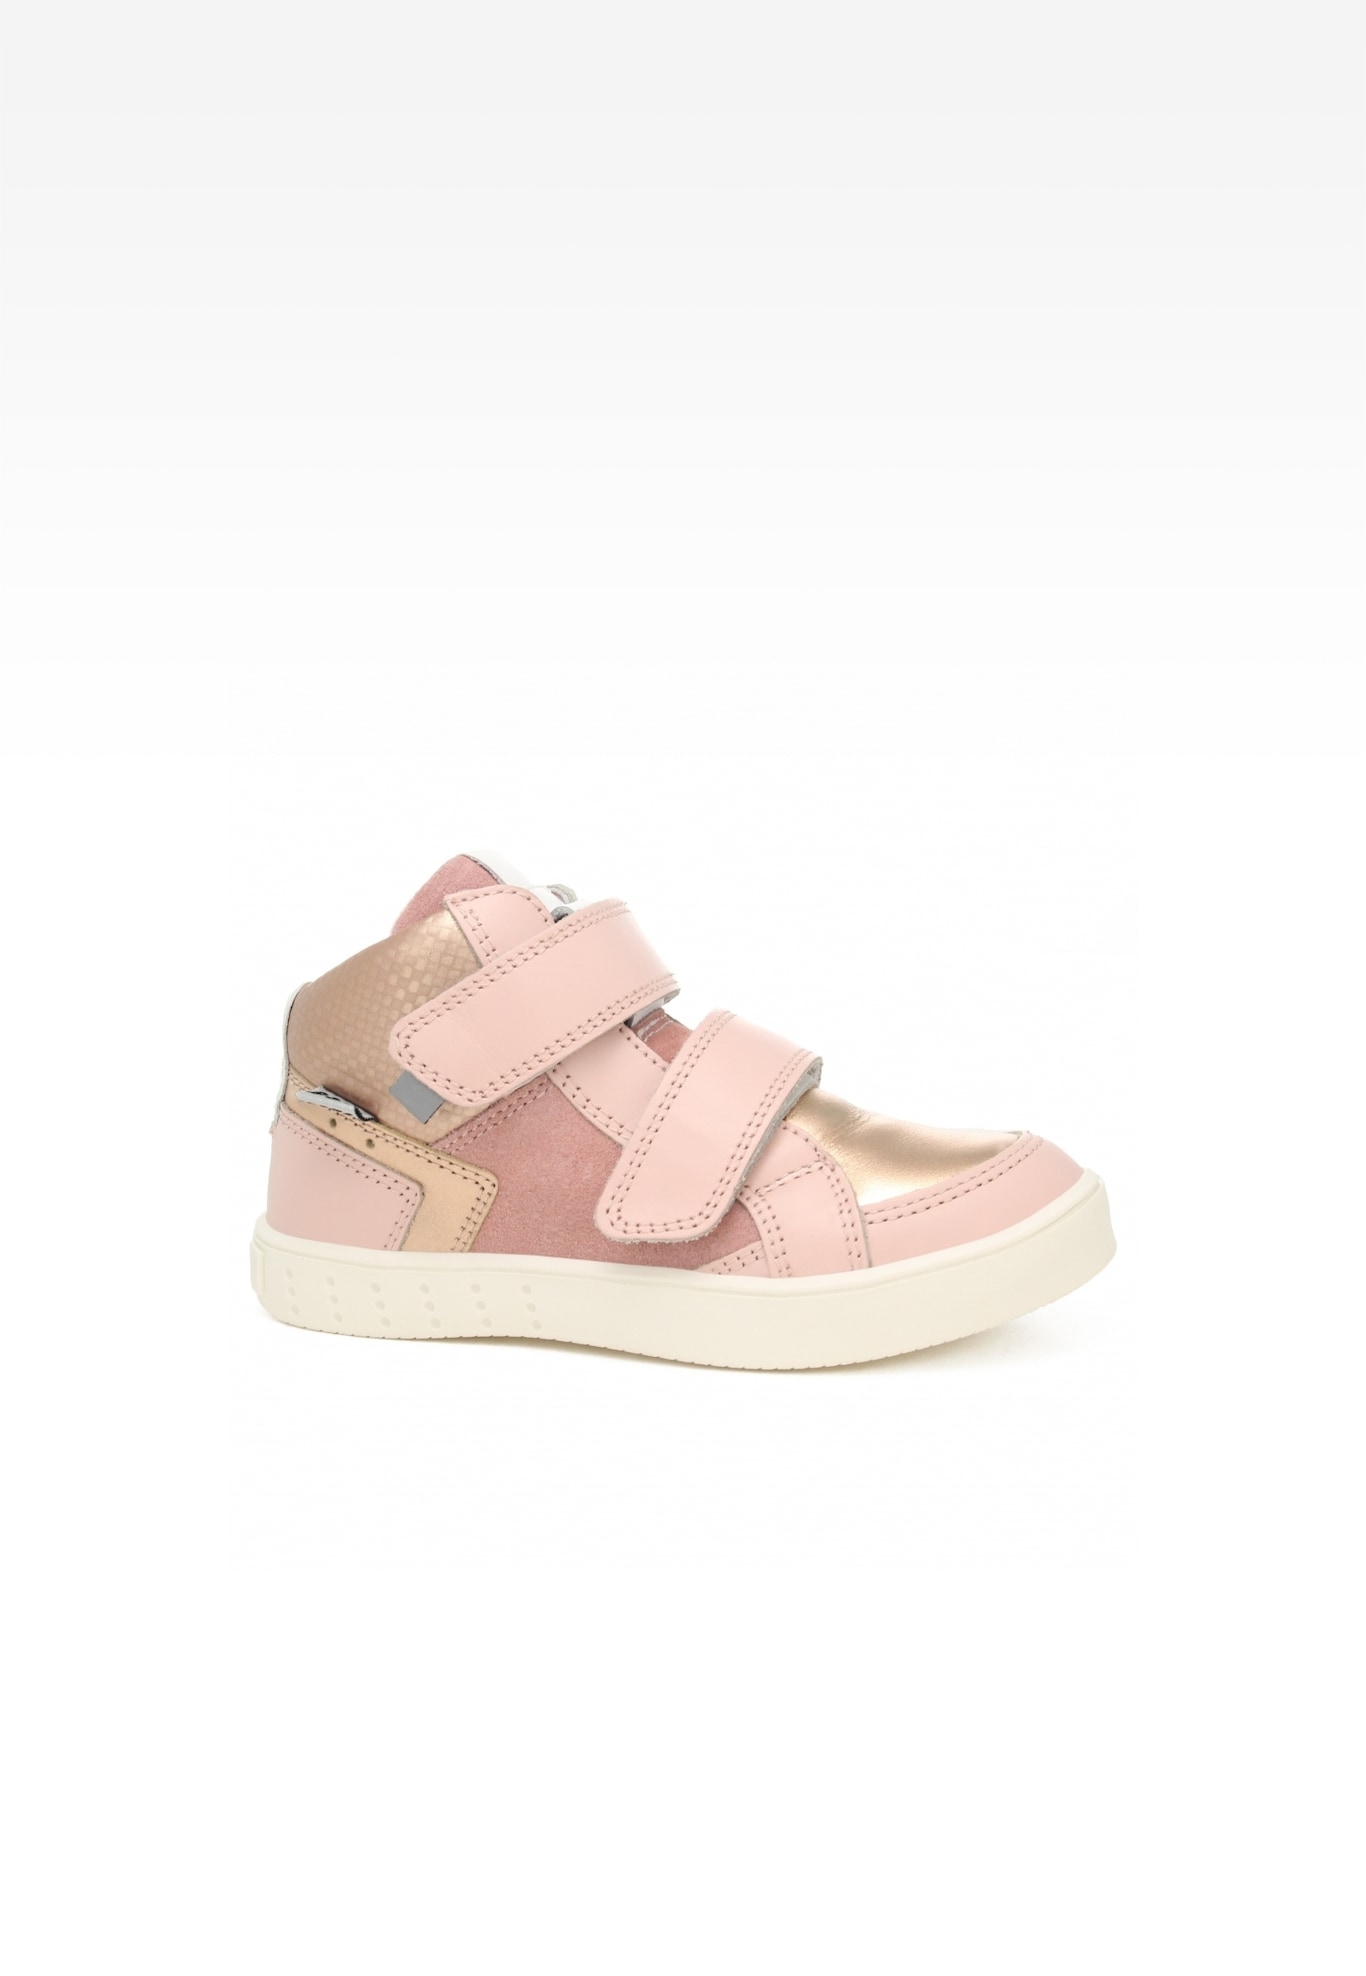 Sneakers BARTEK 27414-026, dla dziewcząt, różowo-złoty